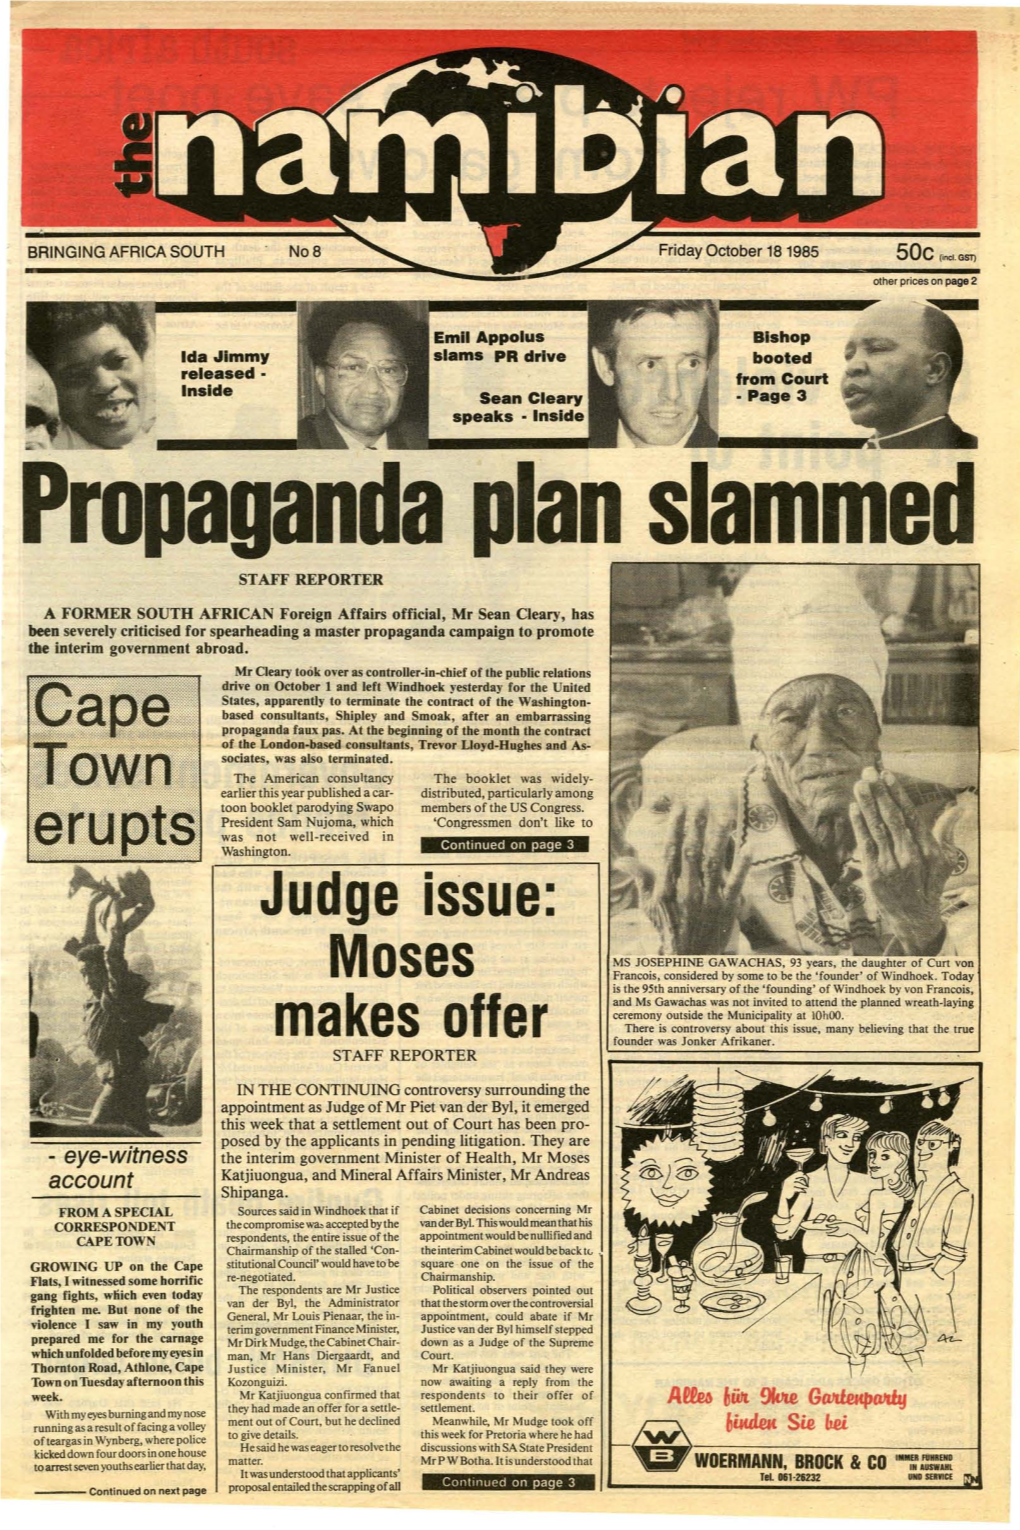 18 October 1985